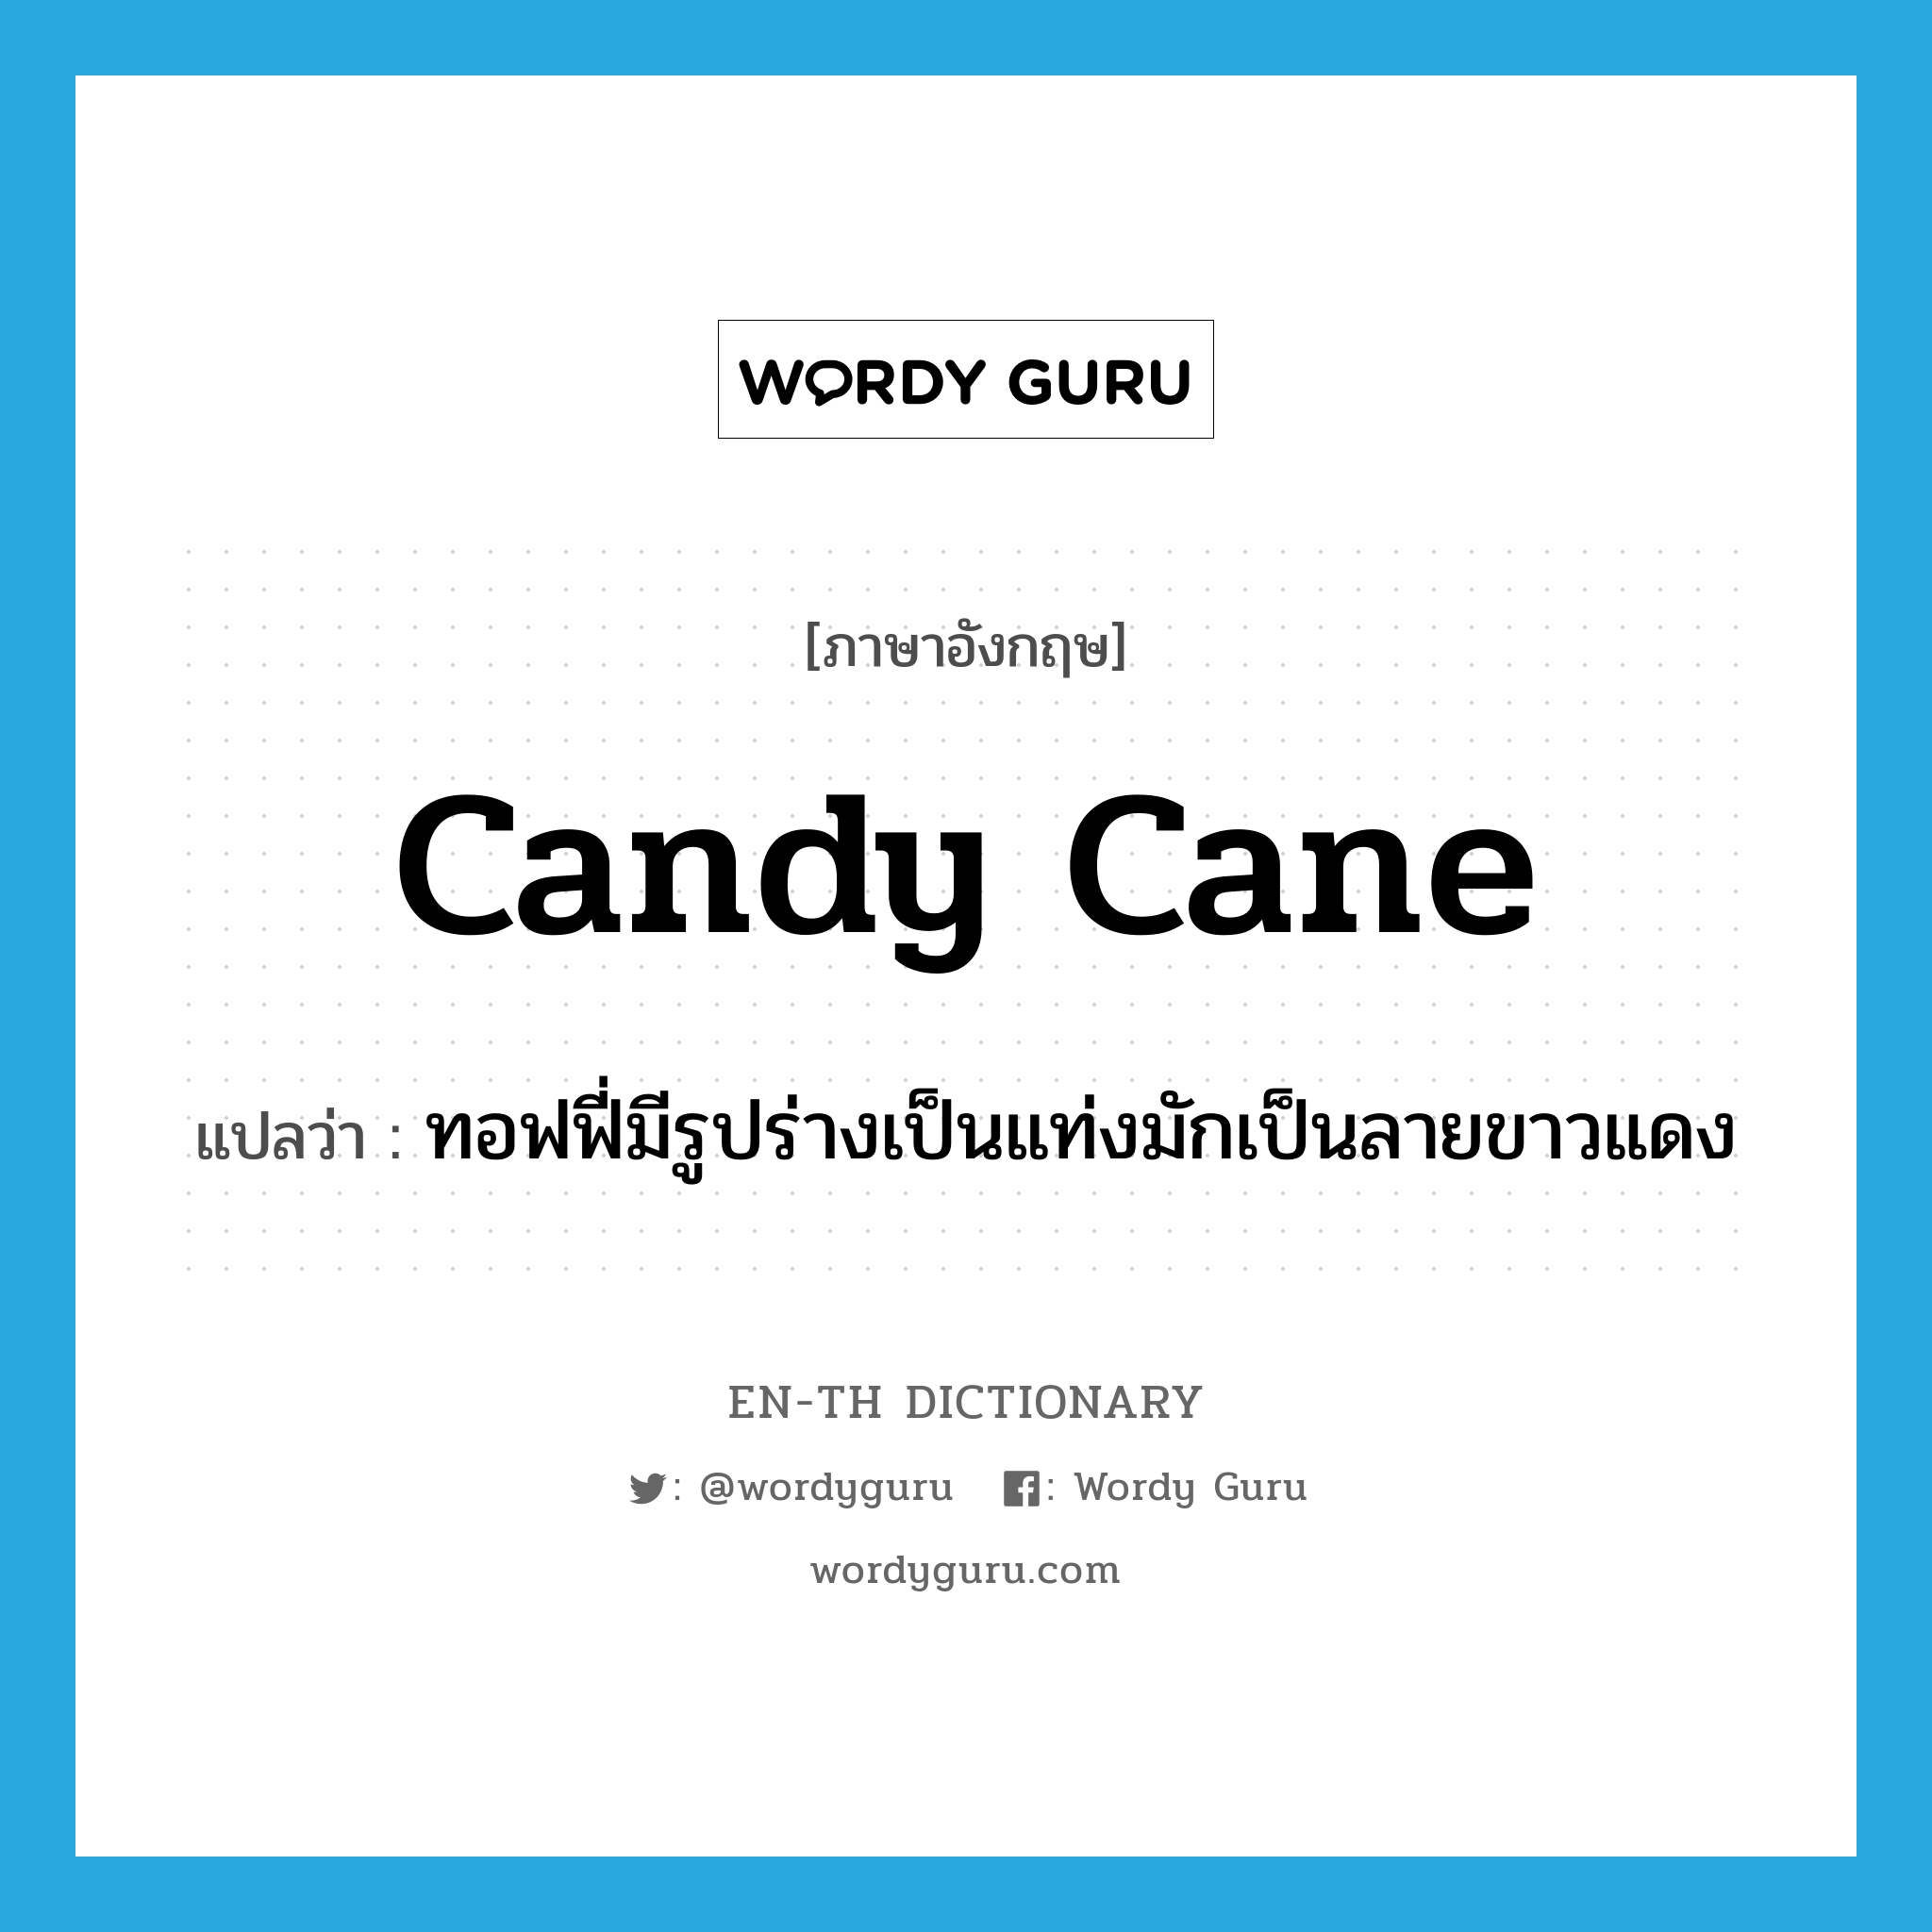 candy cane แปลว่า?, คำศัพท์ภาษาอังกฤษ candy cane แปลว่า ทอฟฟี่มีรูปร่างเป็นแท่งมักเป็นลายขาวแดง ประเภท N หมวด N